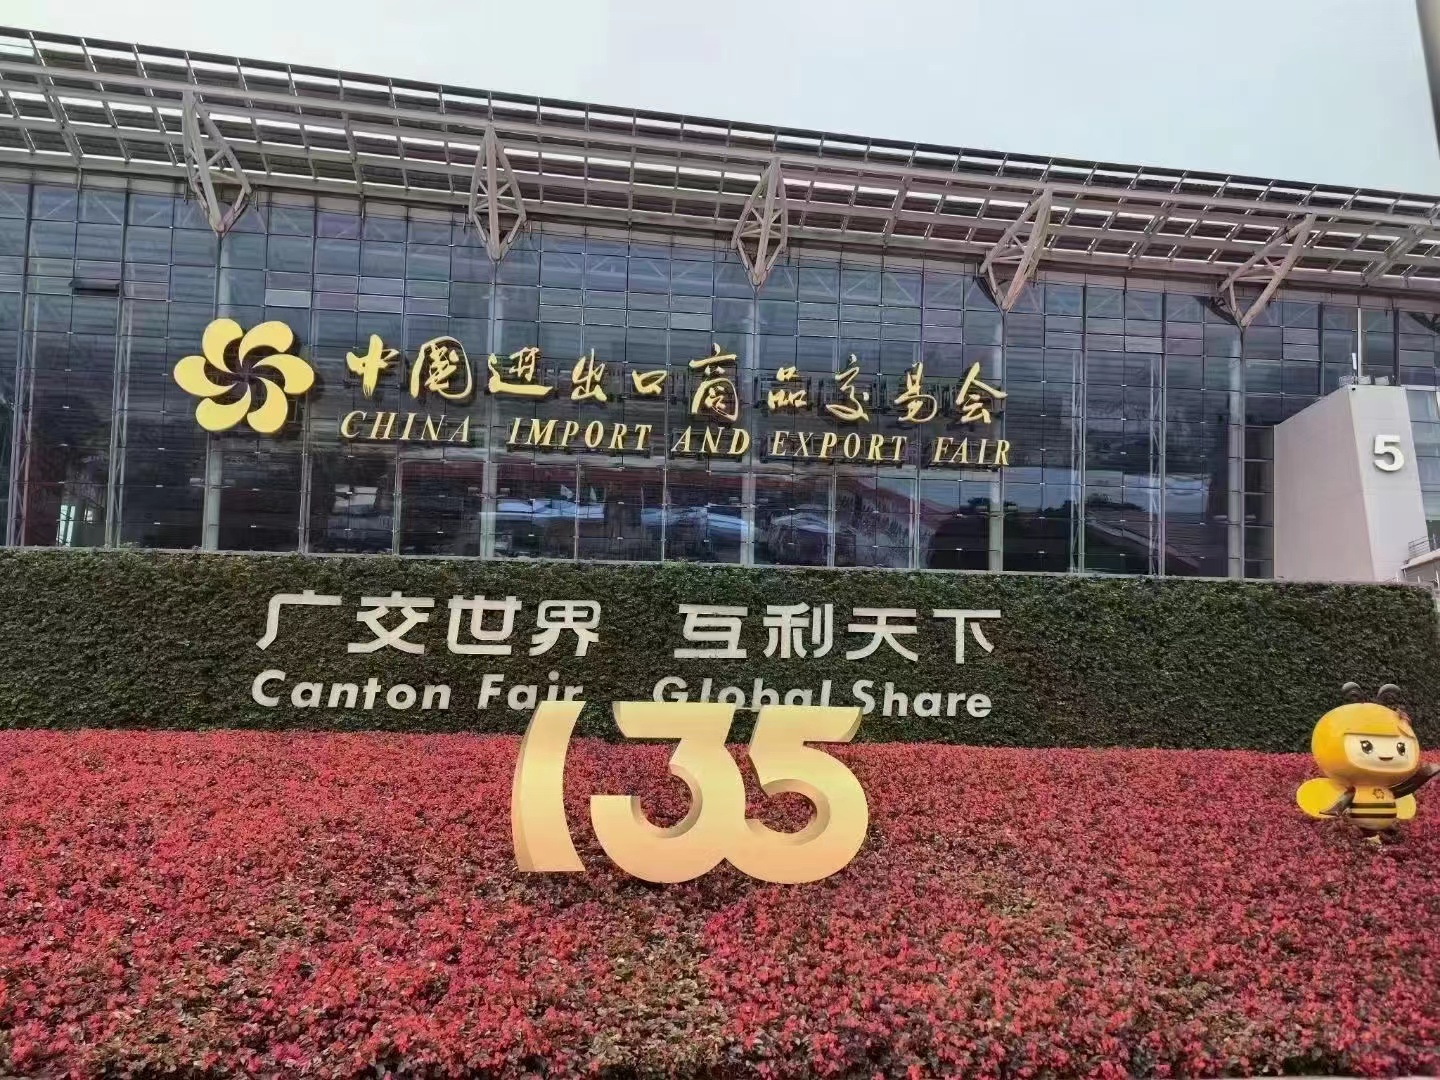 Maligayang pagdating sa 135th Canton Fair at umaasa na makilala ka sa Guangzhou